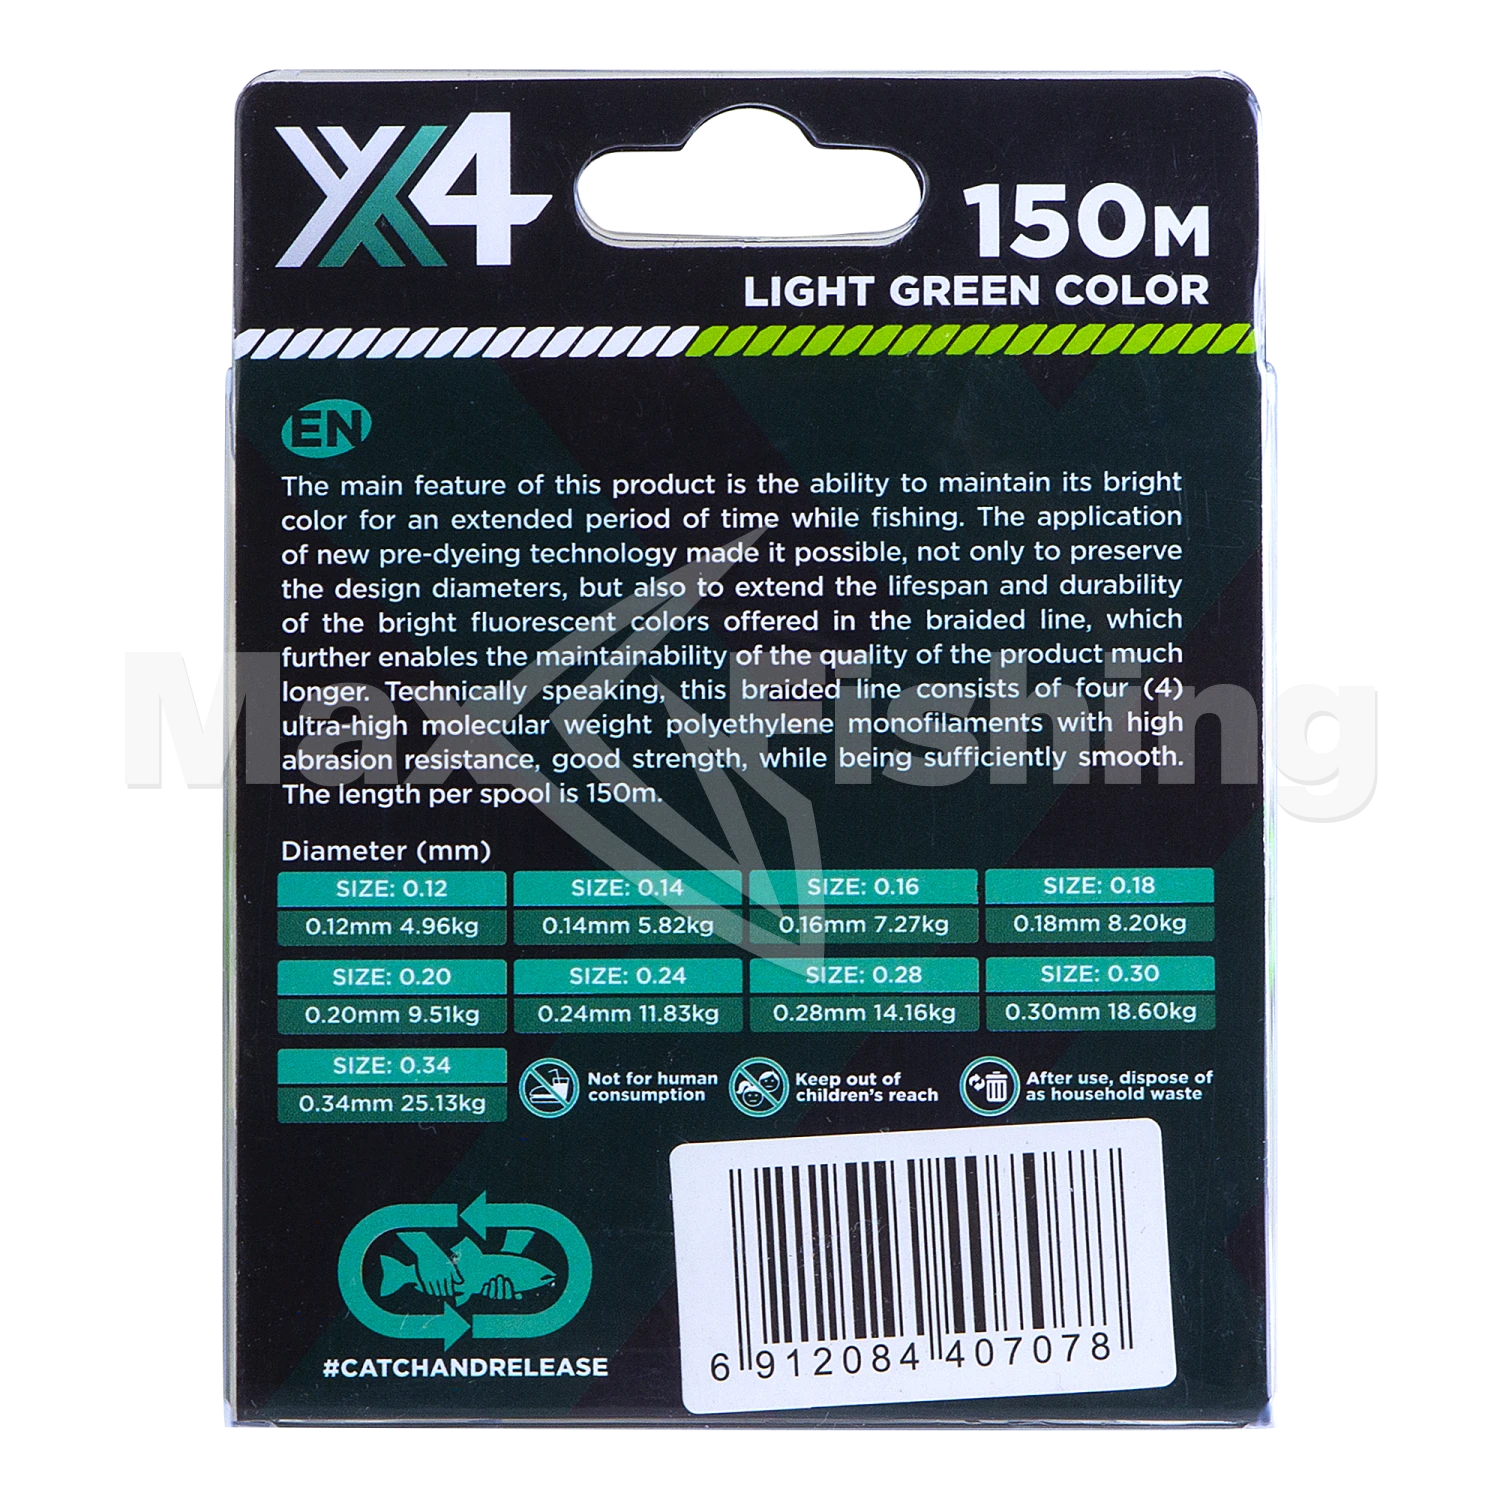 Шнур плетеный Zemex Rexar X4 0,18мм 150м (light green)